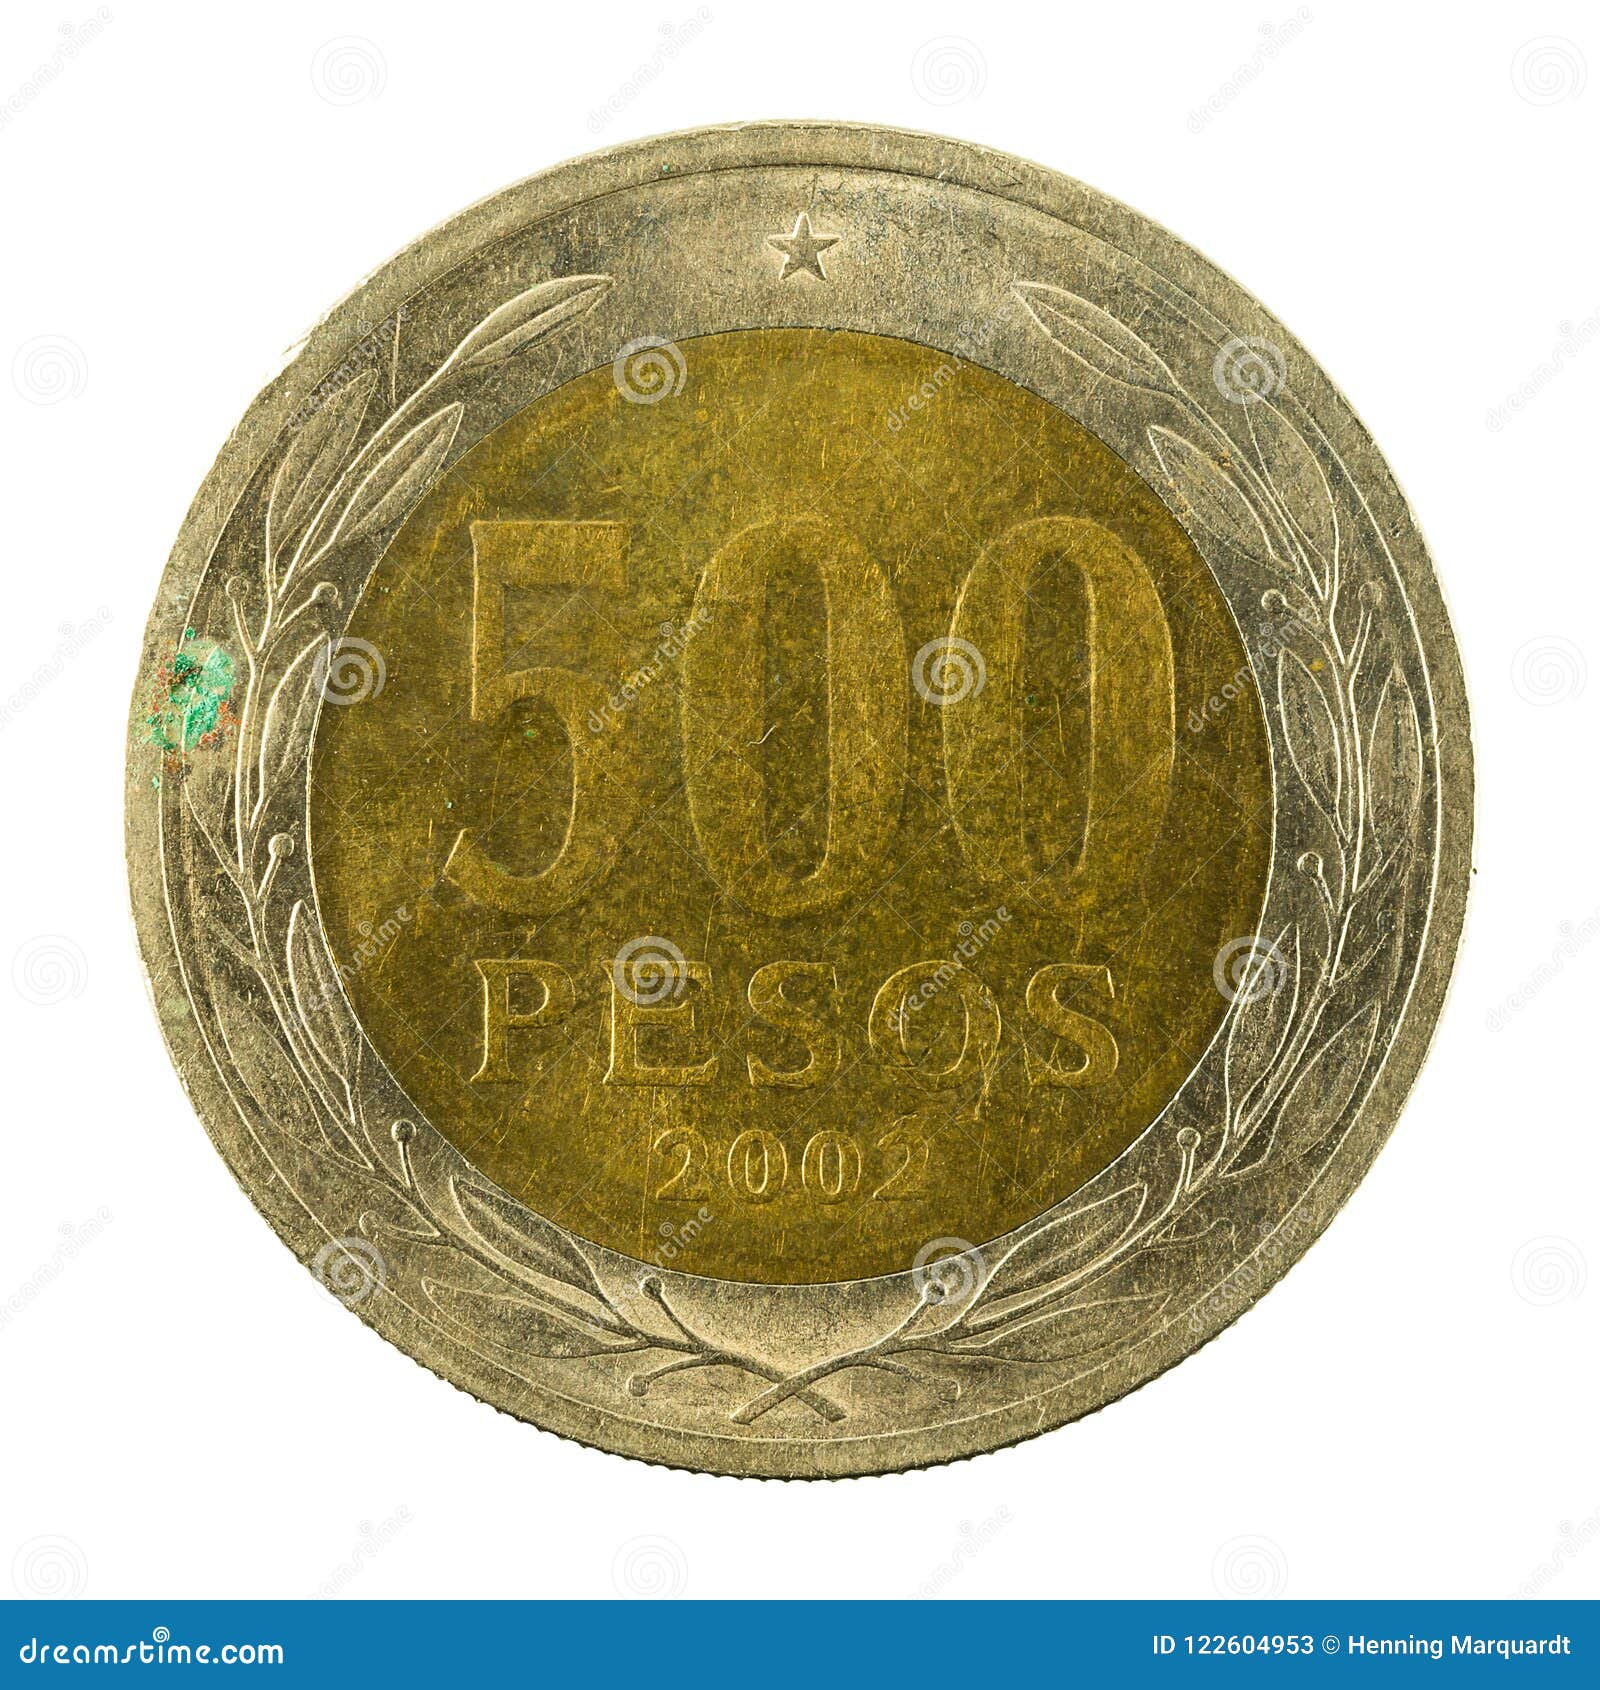 智利银元-价格:100元-se79295259-银元/机制银币-零售-7788钱币网